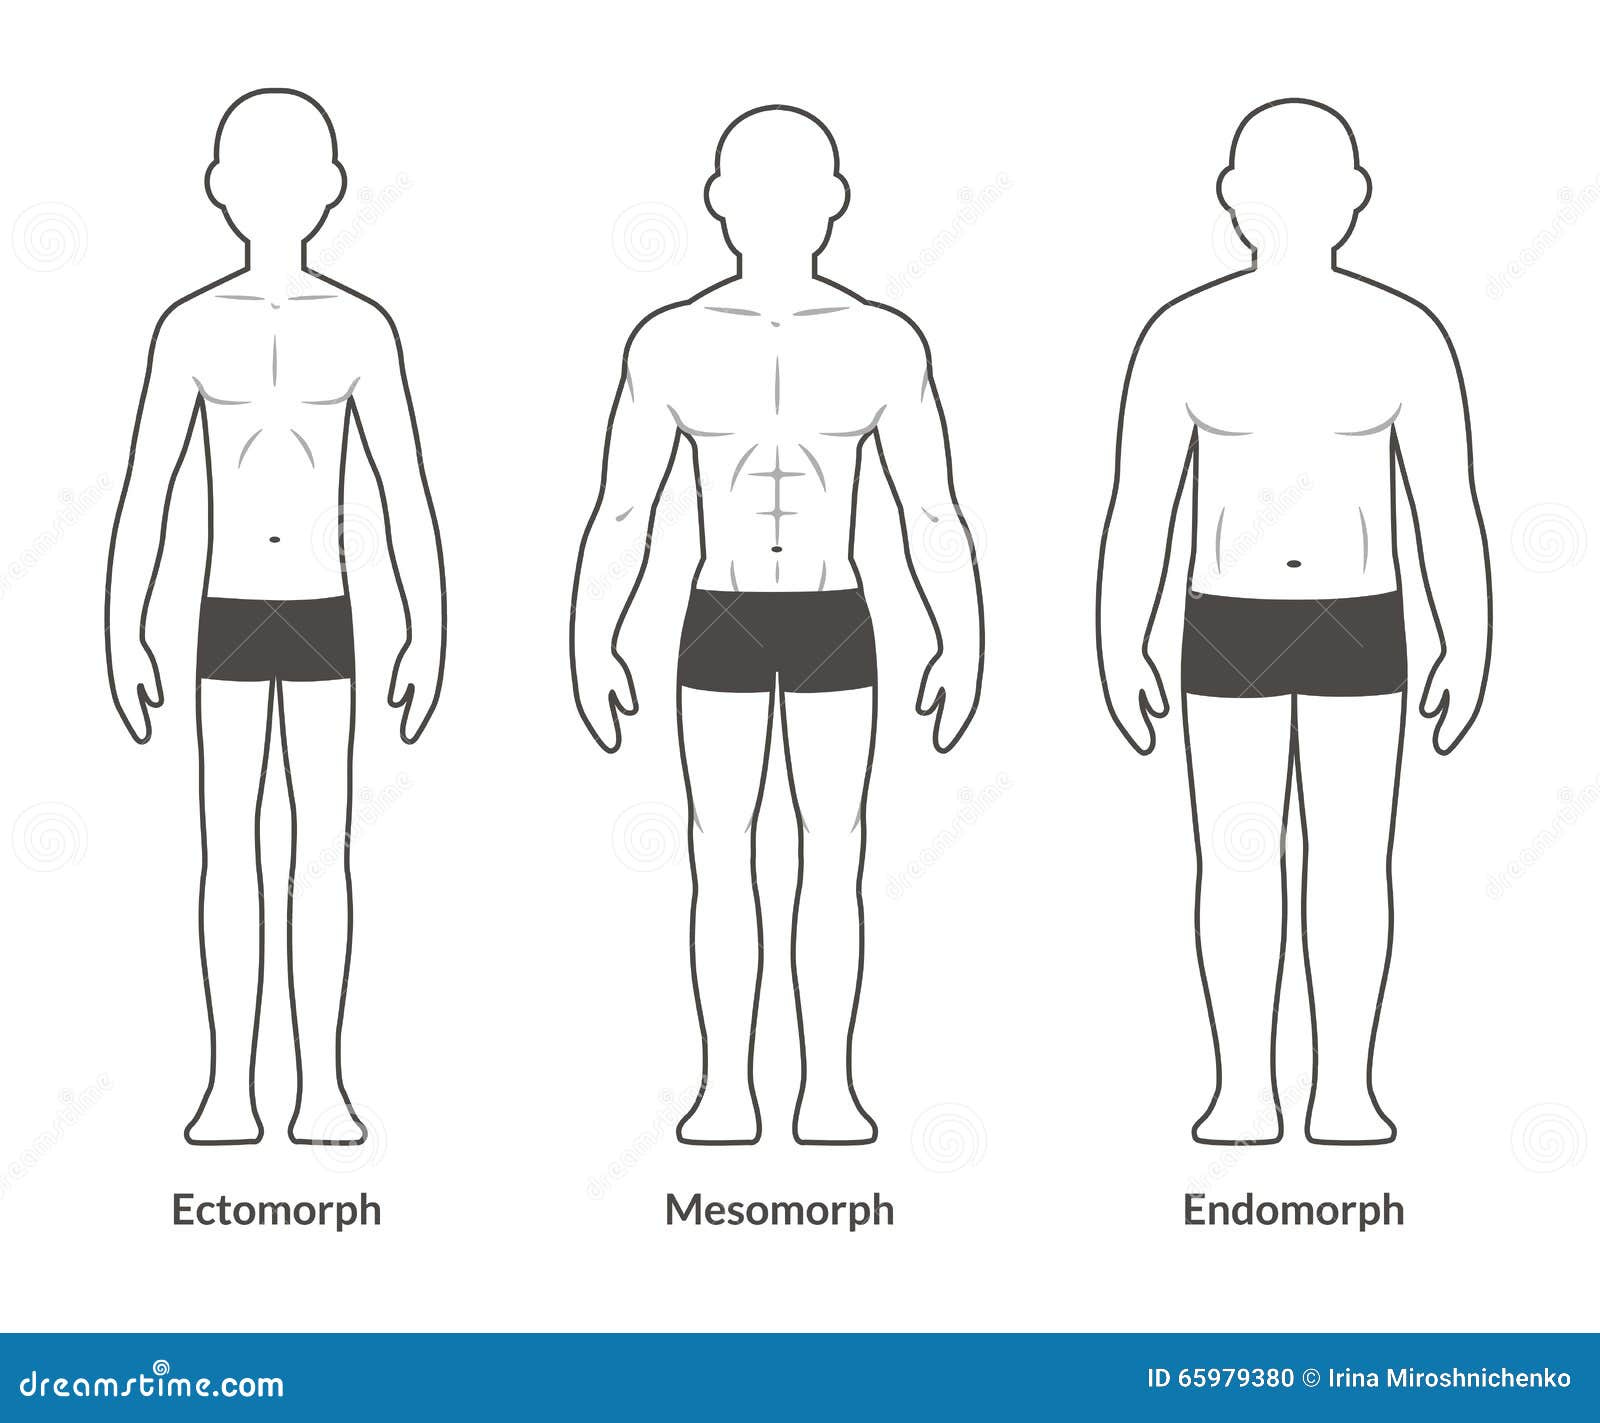 Men's Body Shape Guide (Fat, Skinny, Muscular) - Dress Your Body Type